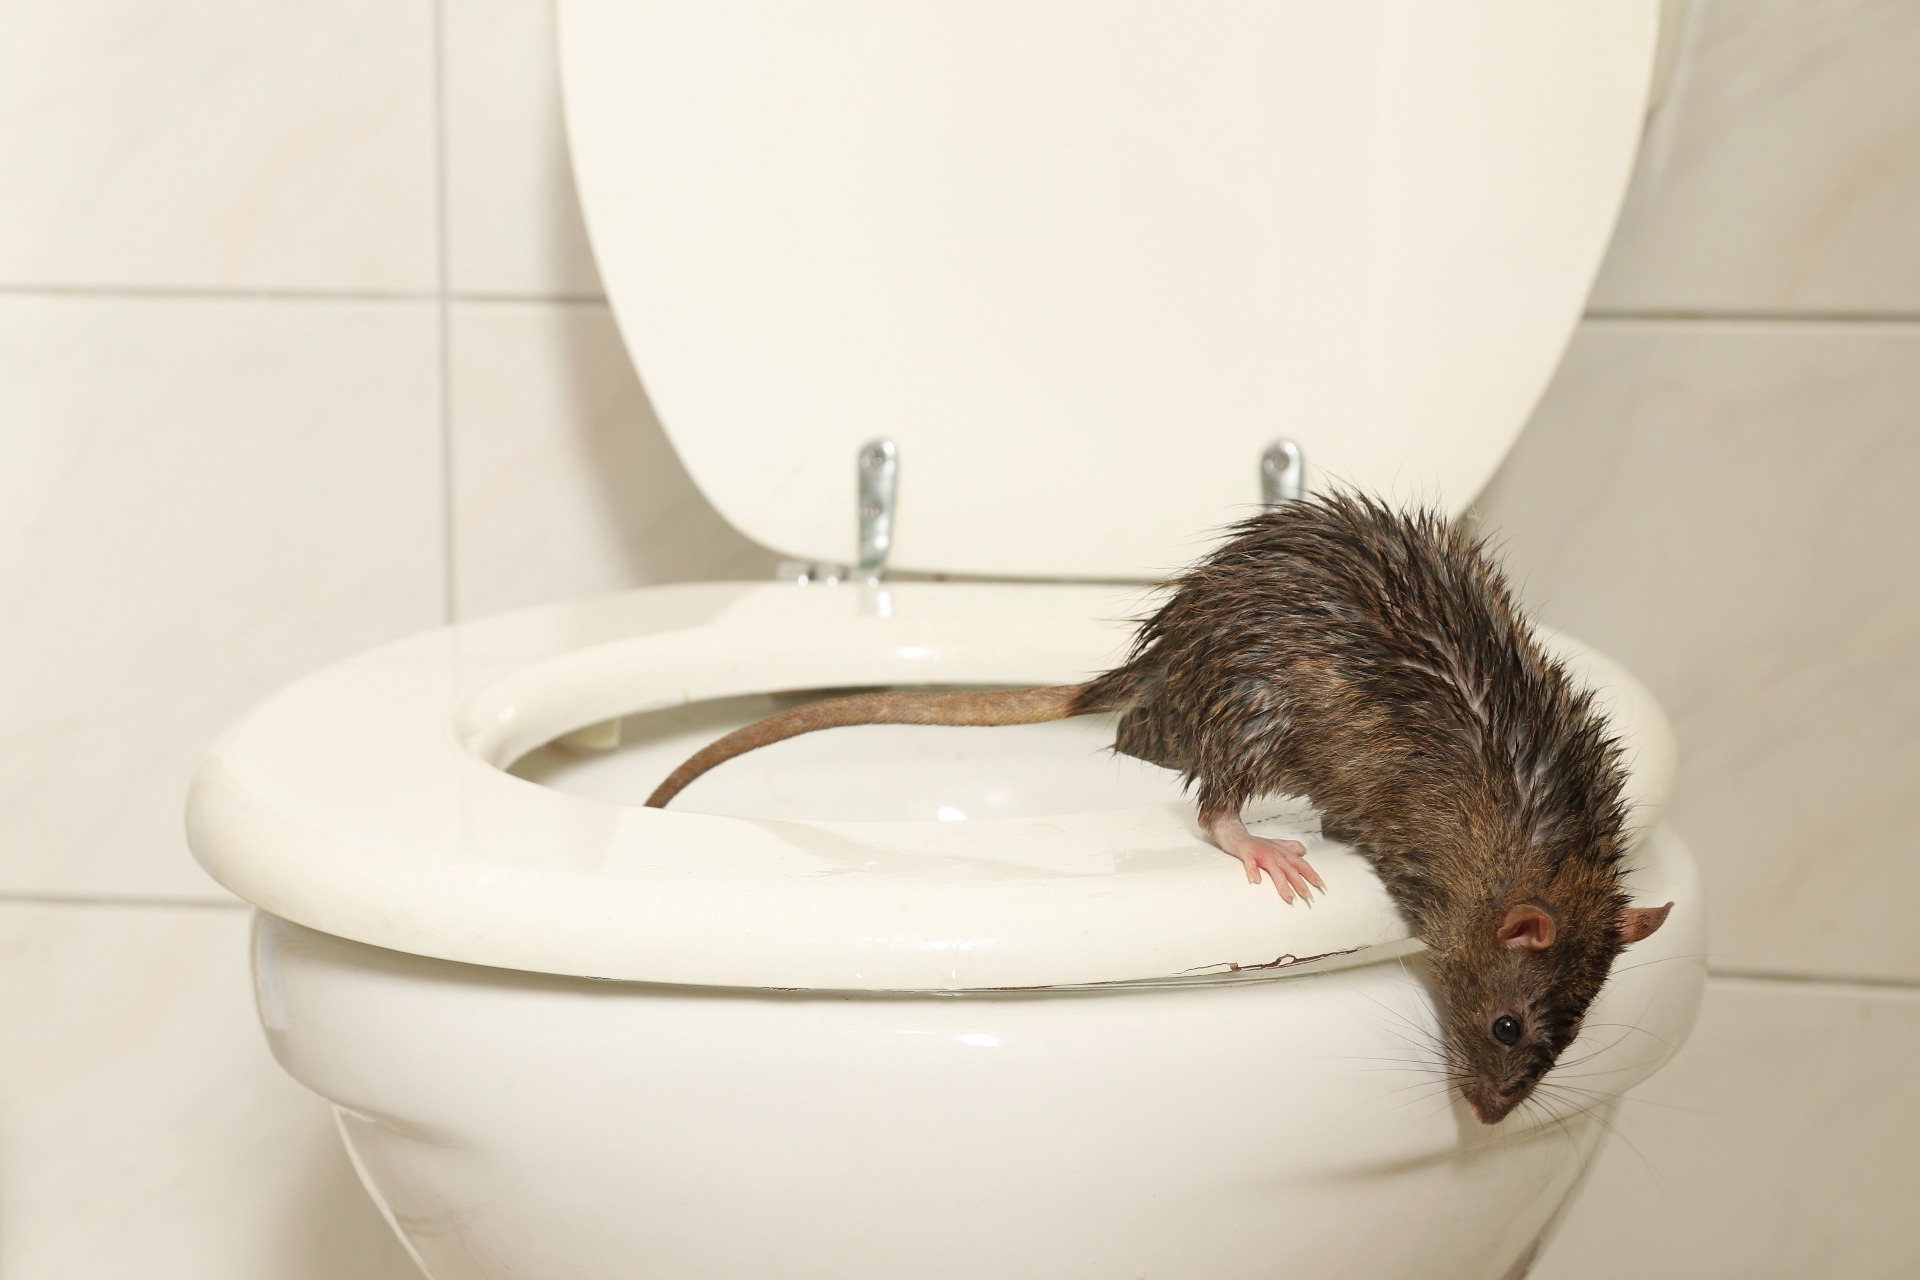 Rat on the toilet